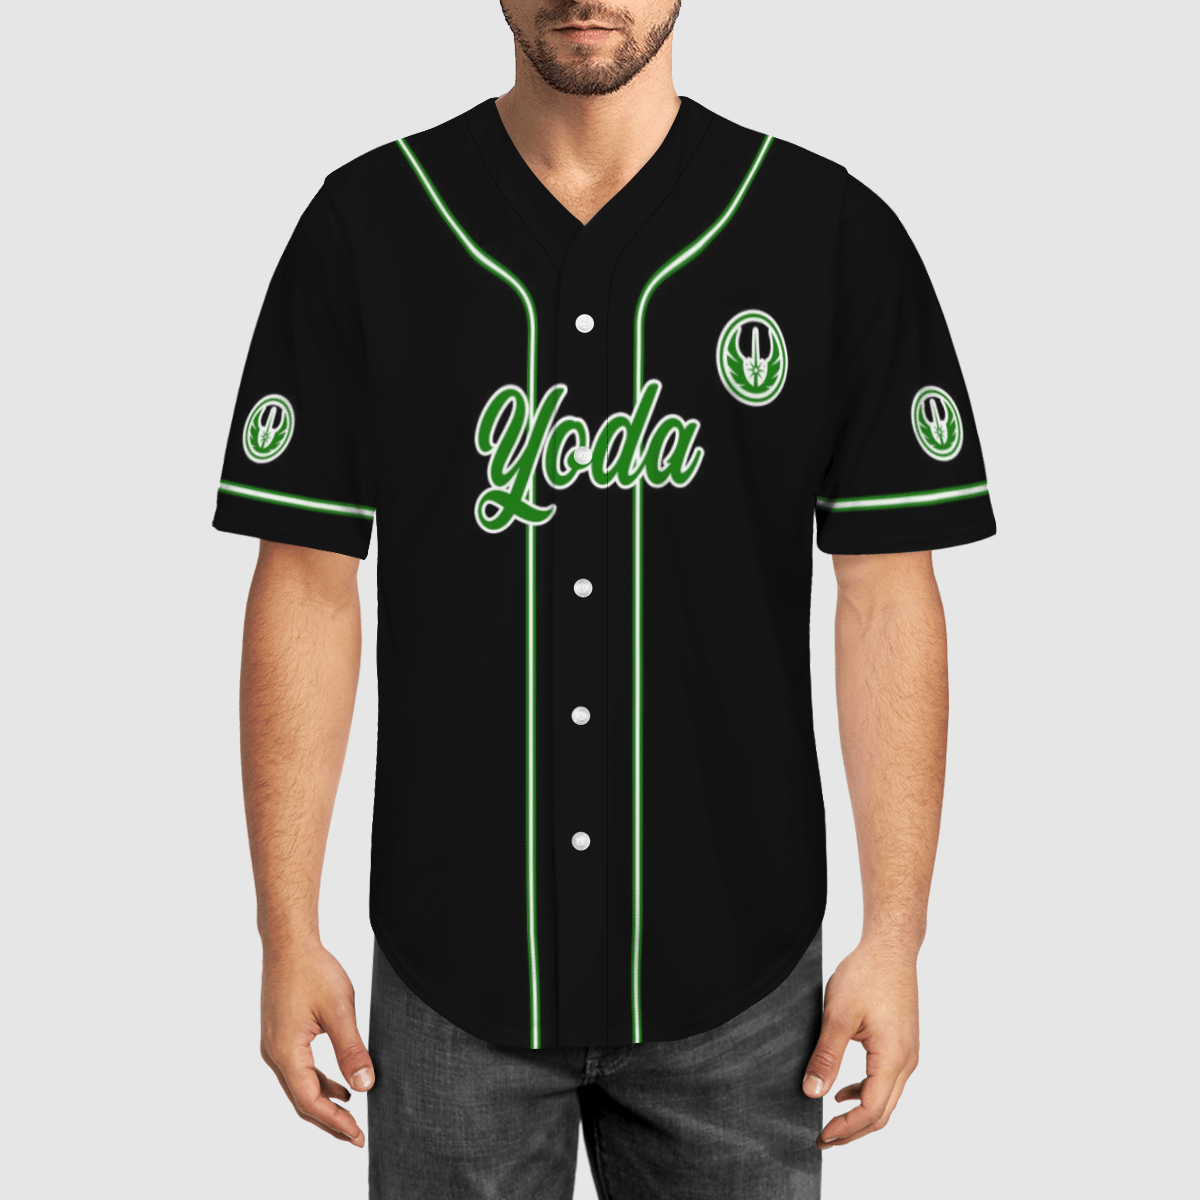 Yoda Star Wars baseball shirt – LIMITED EDITION